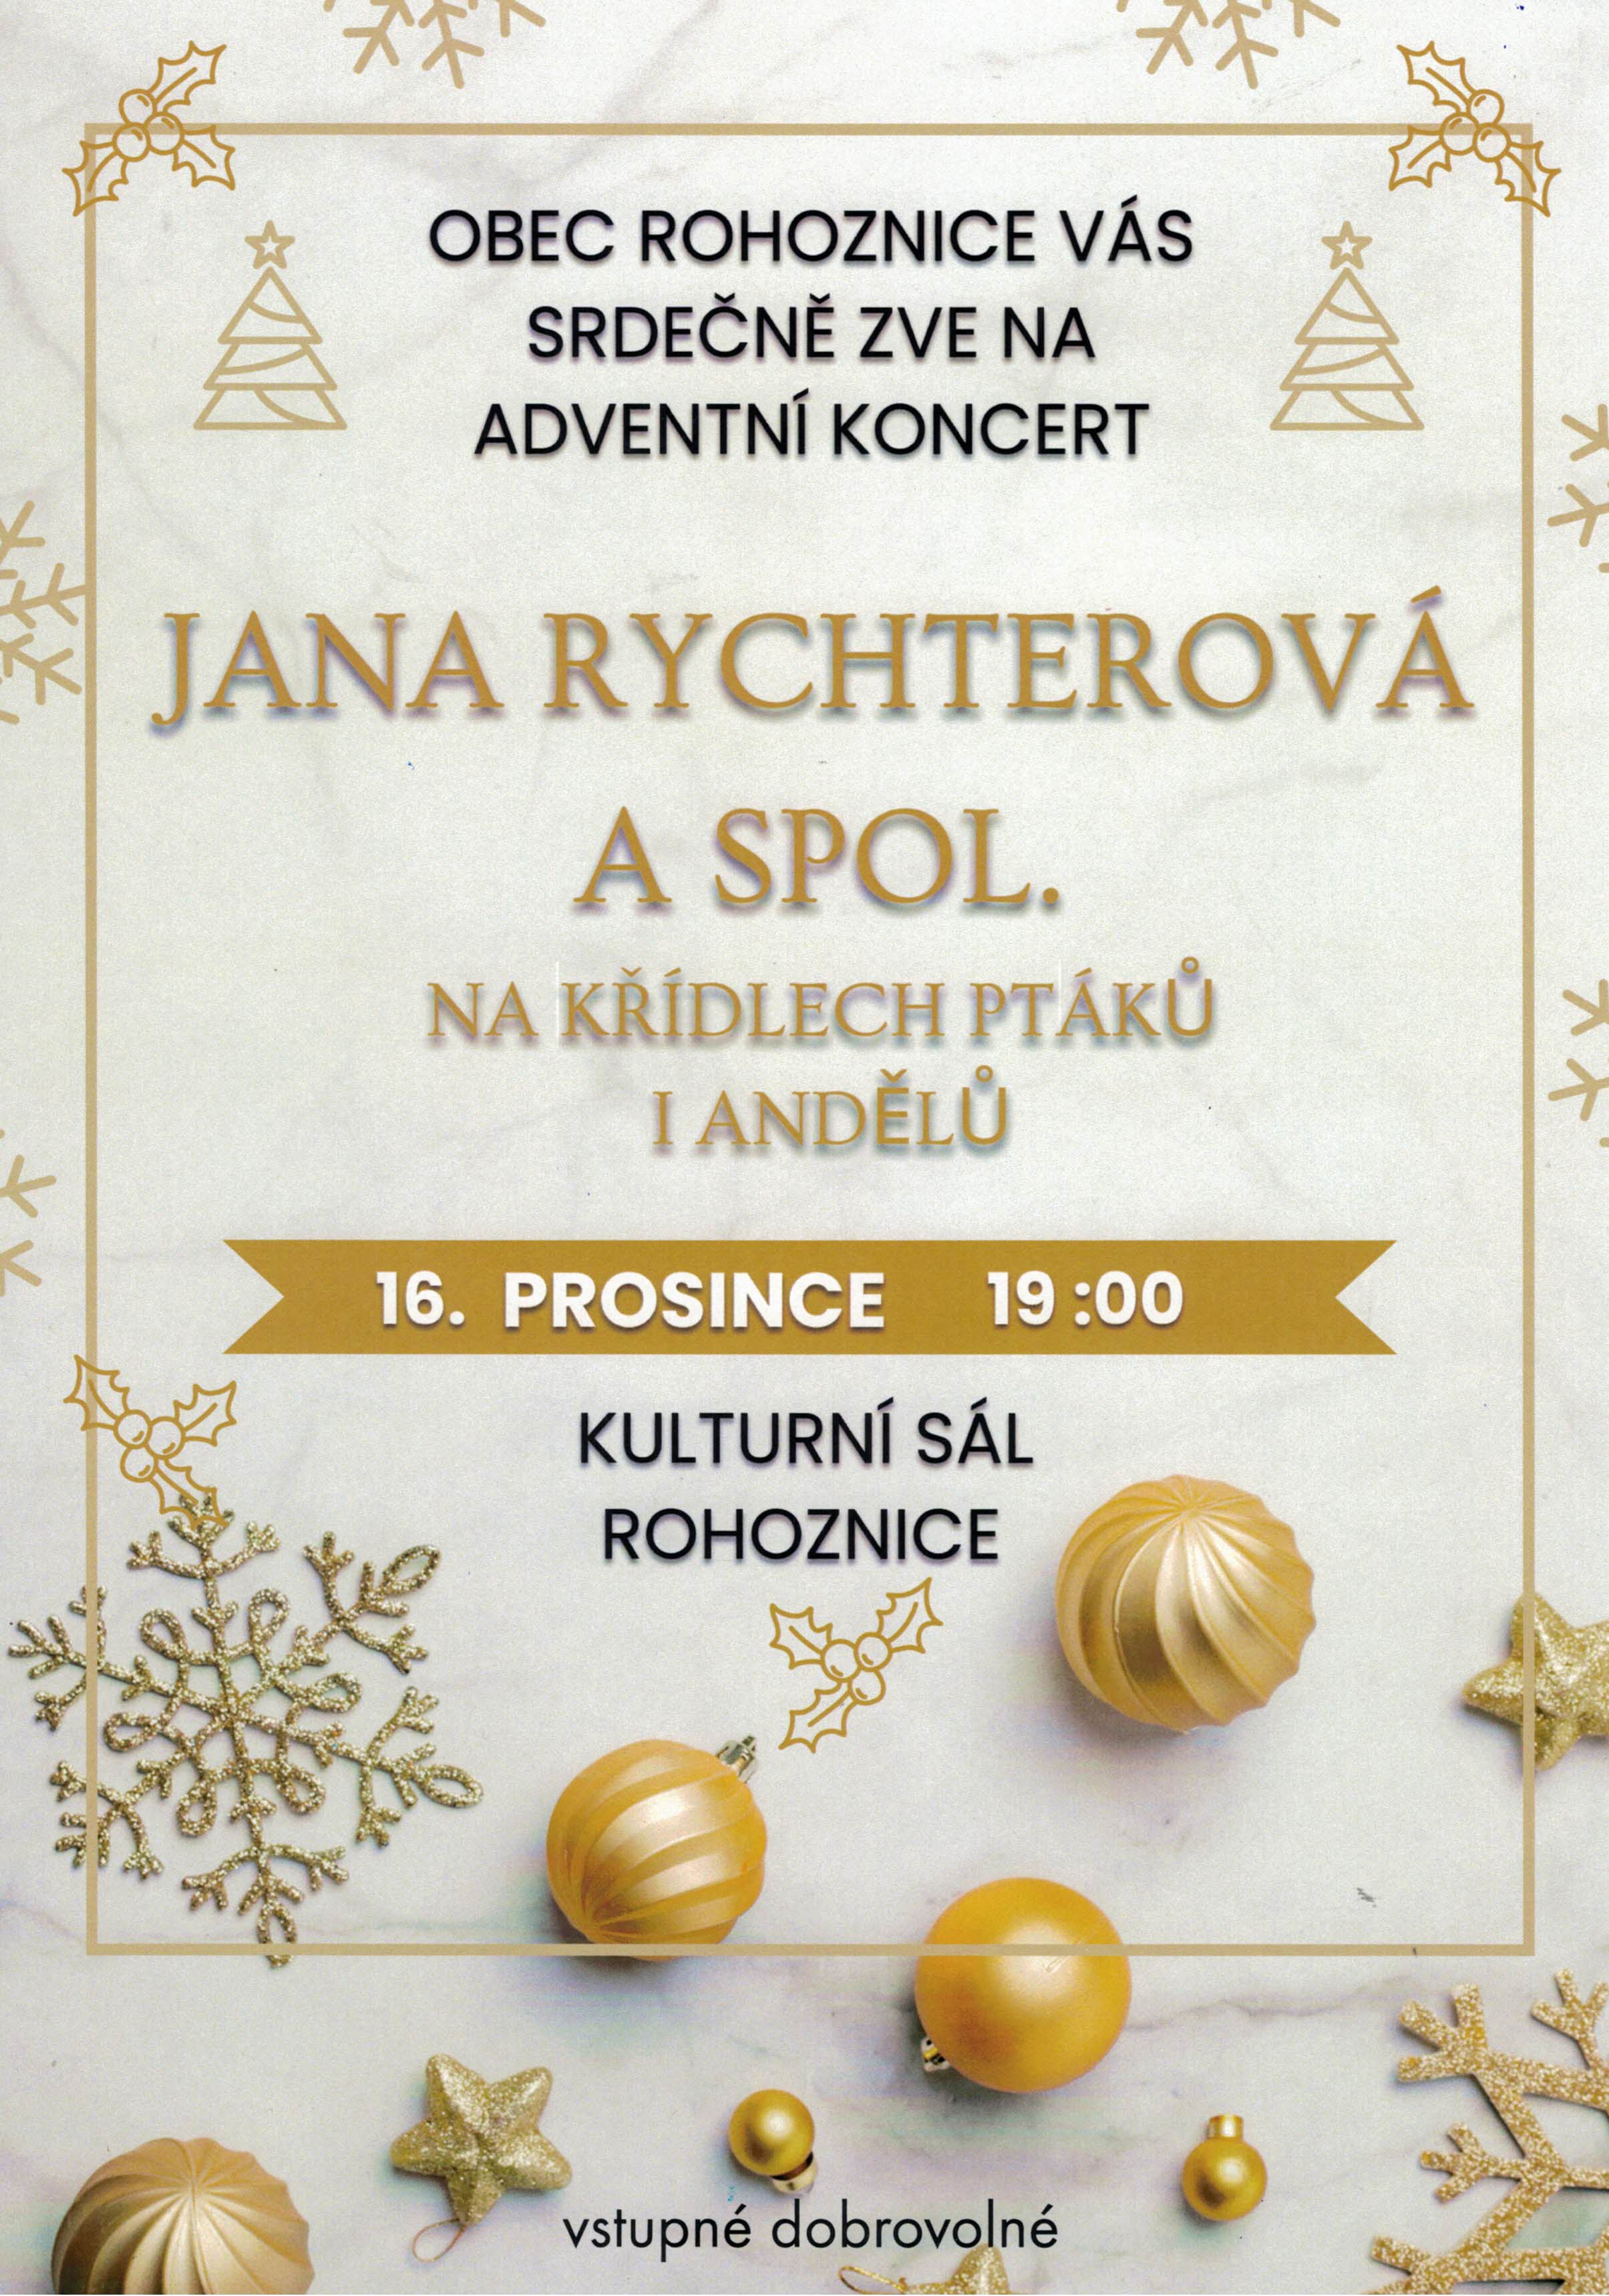 Adventní koncert Jana Rychterová